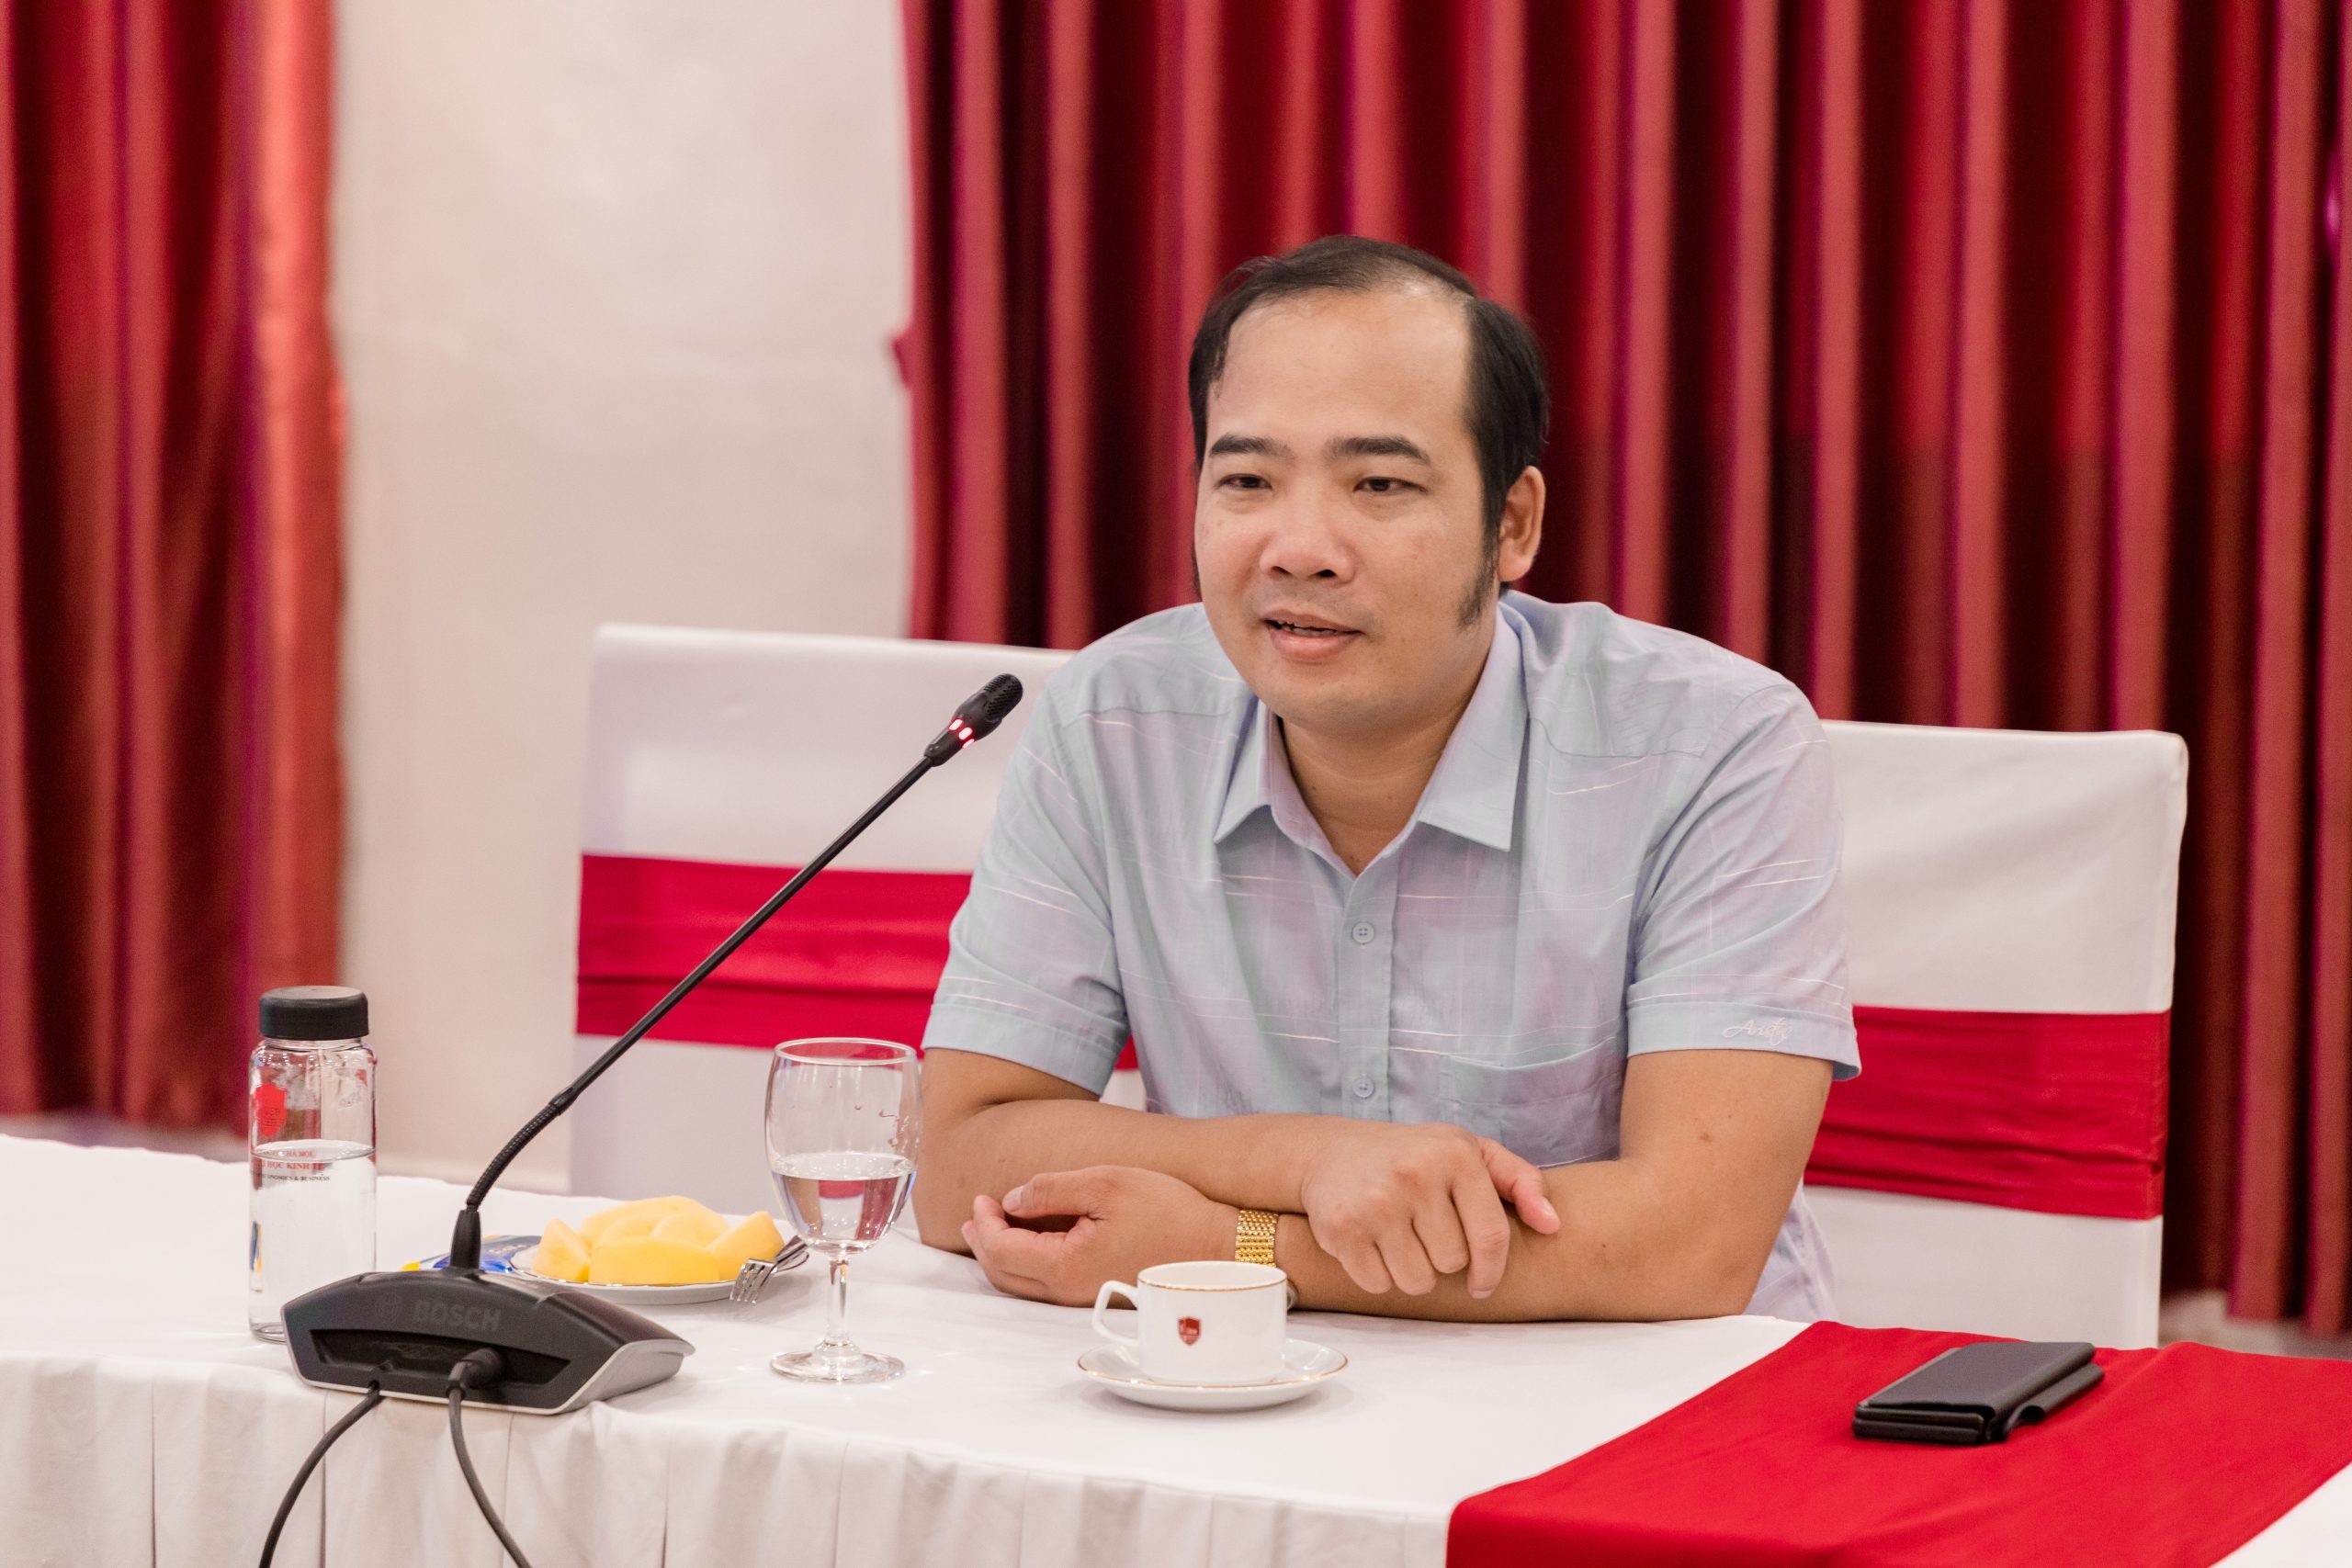 
Ông Nguyễn Anh Quê, Chủ tịch Tập đoàn G6
